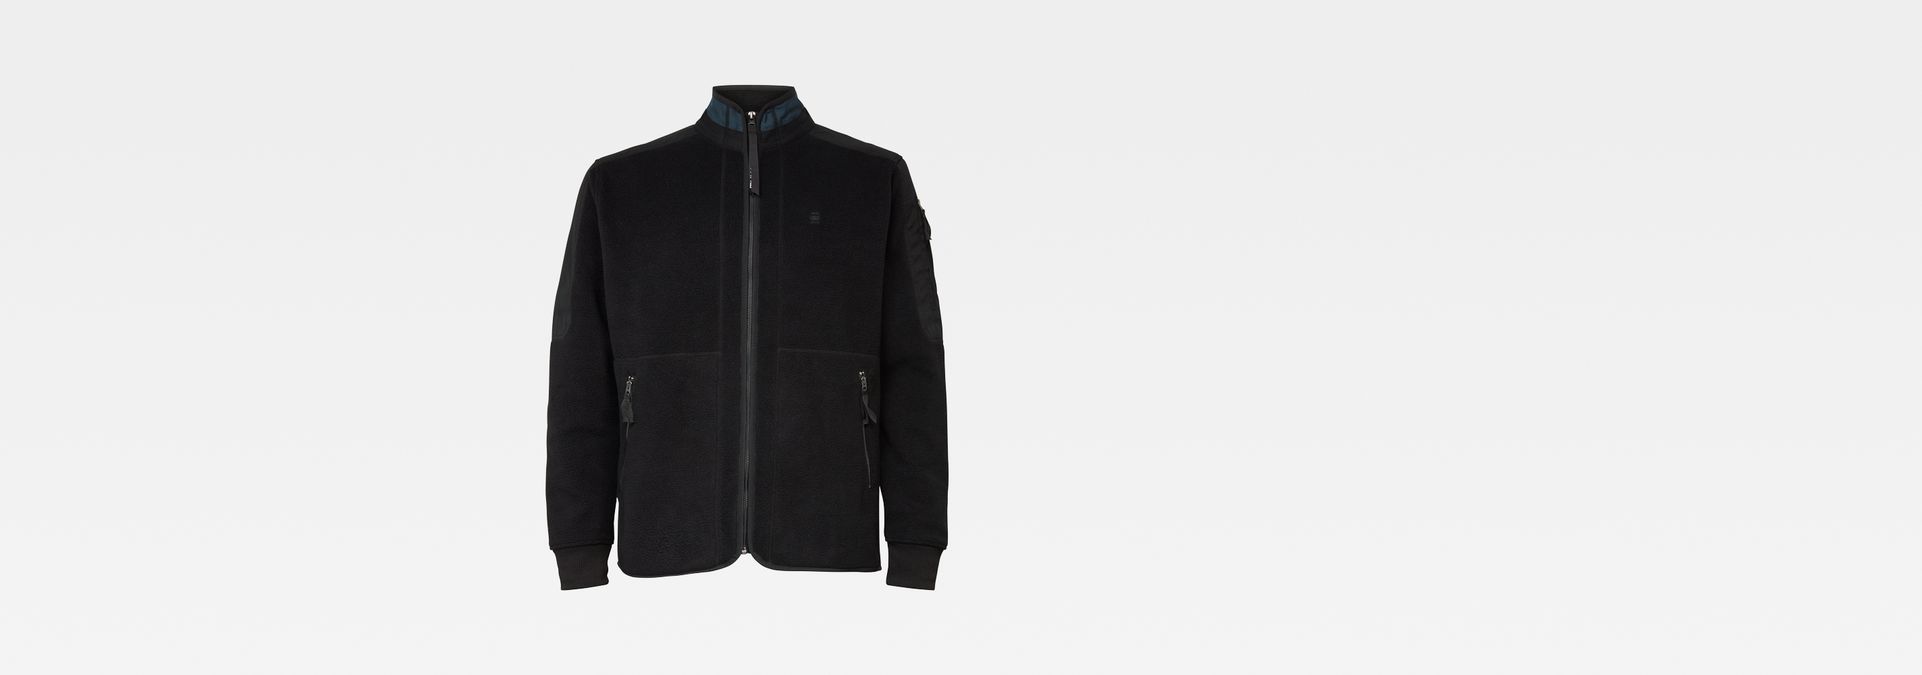 Zelfrespect chrysant oplichterij Tech Fleece Zip Through Sweater | Black | G-Star RAW®